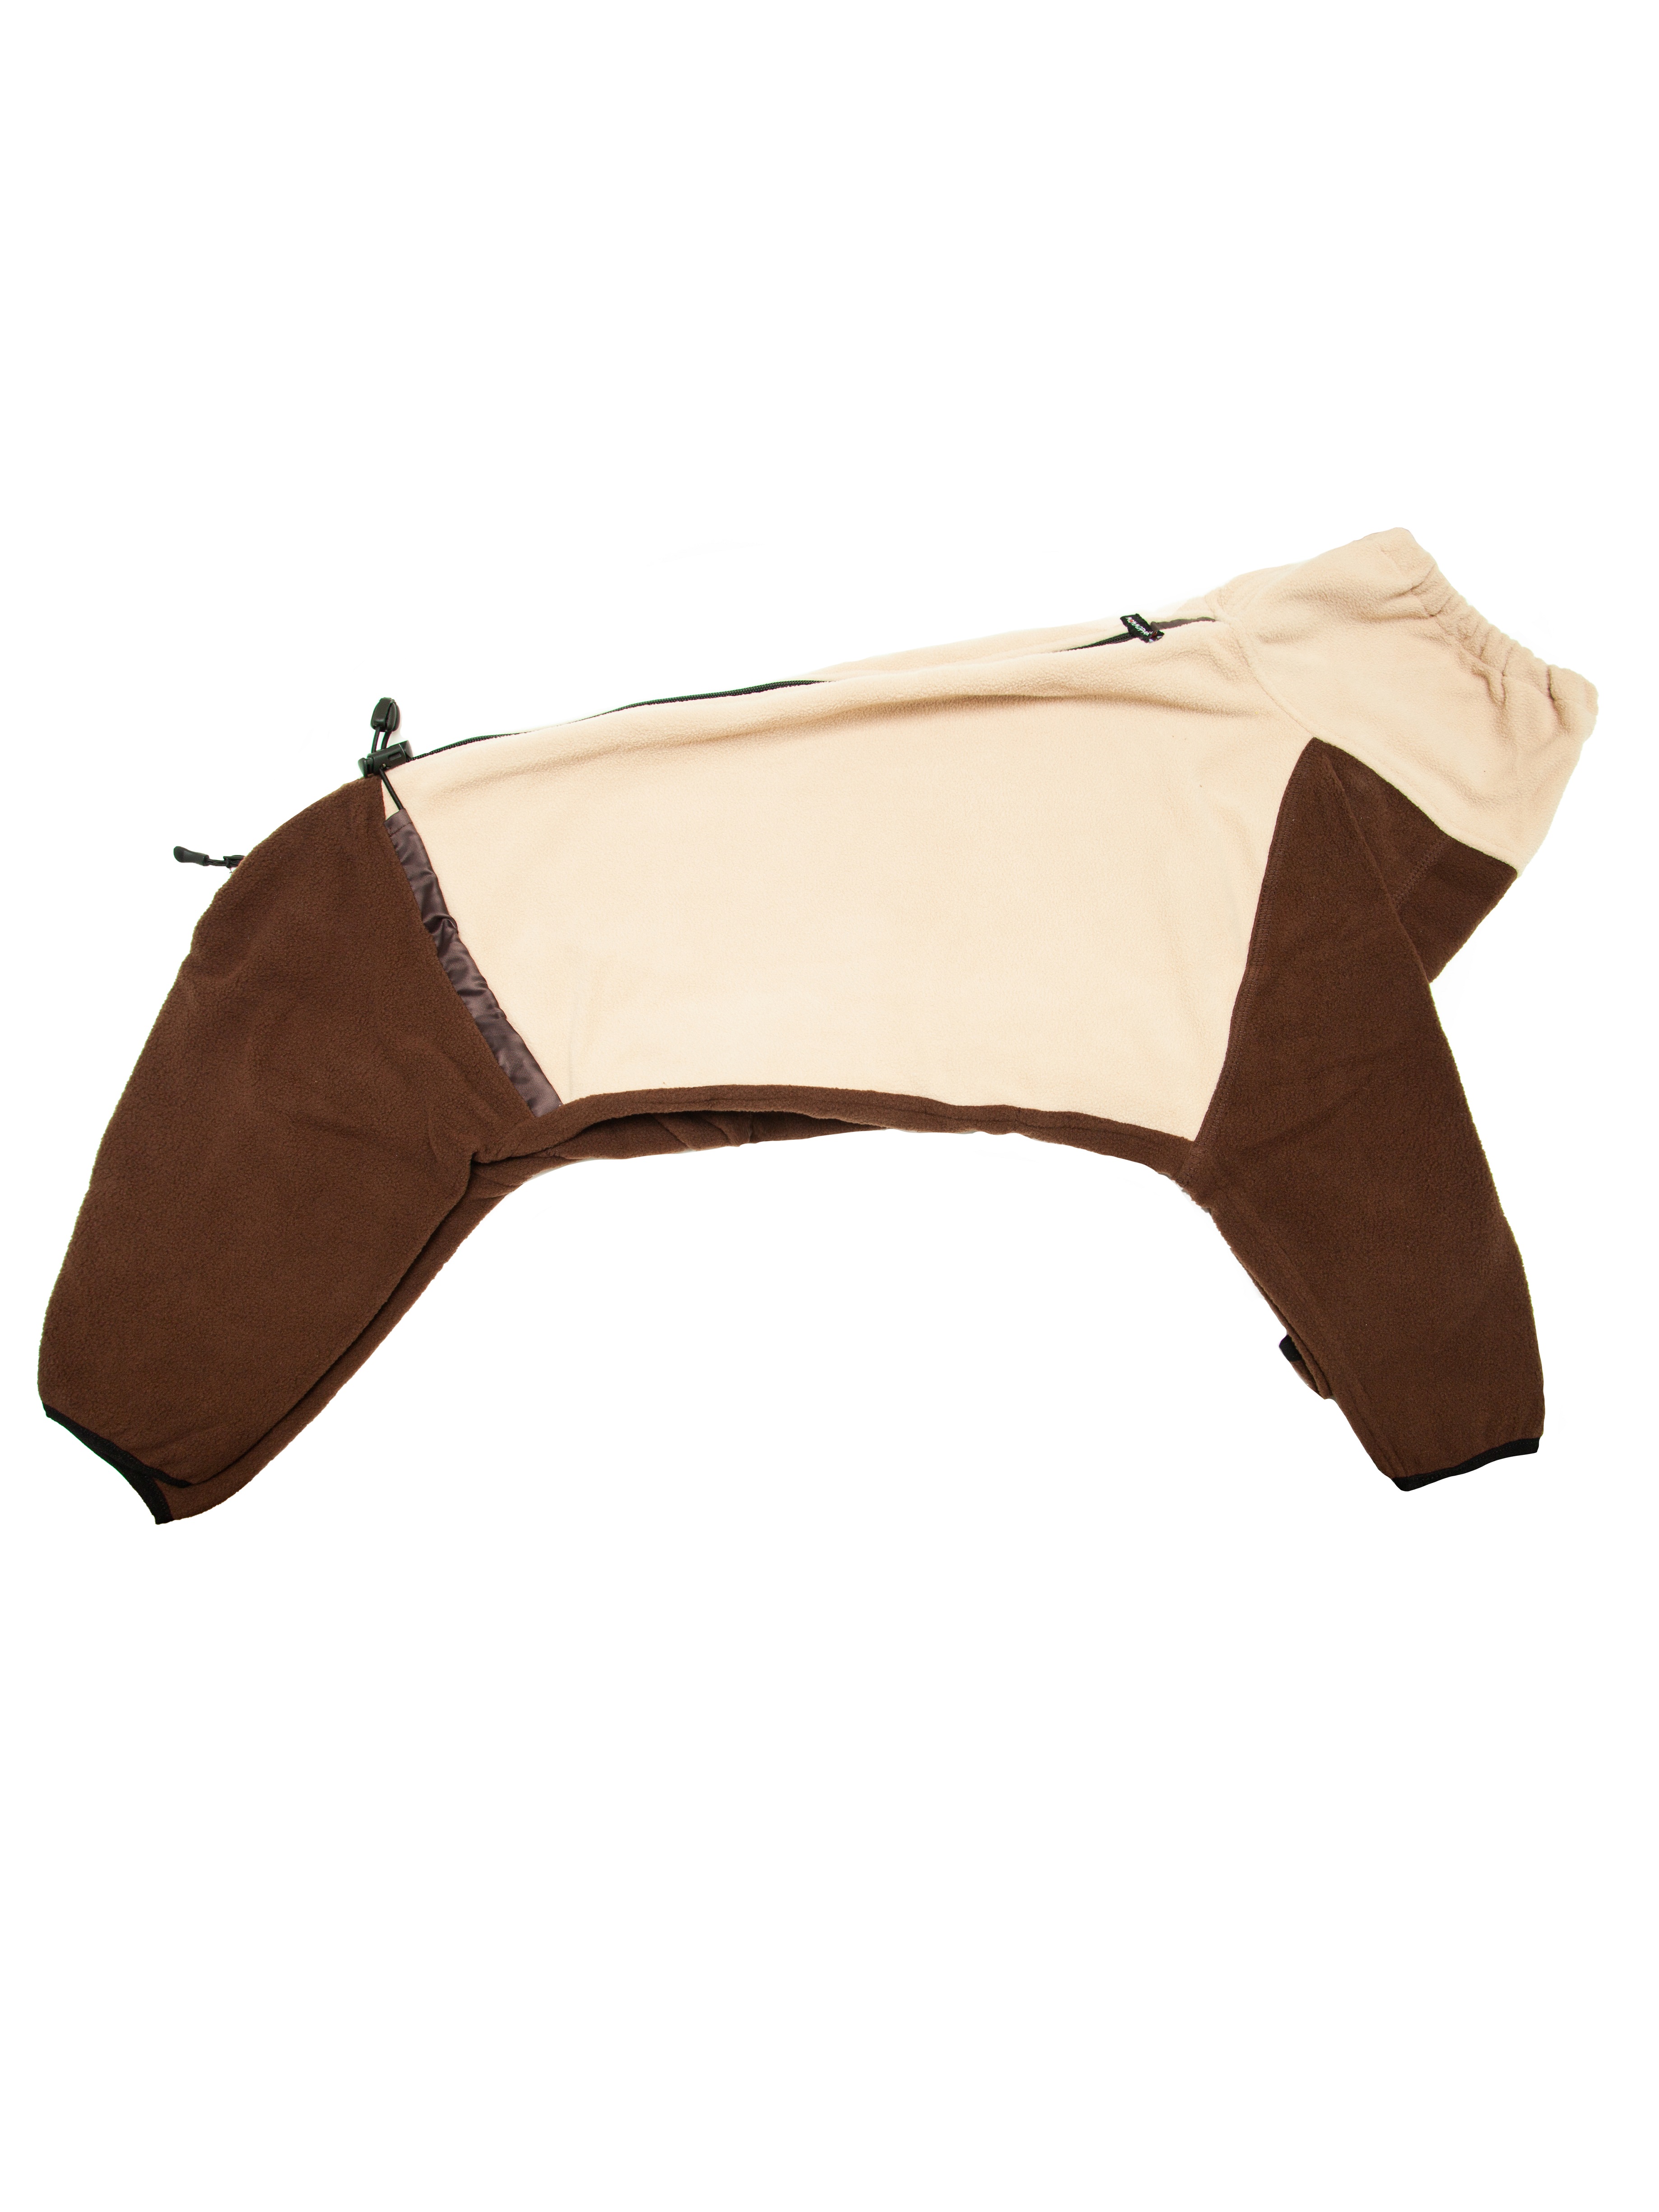 Флисовый комбинезон для собак на молнии, цвет бежево-коричневый, размер M3